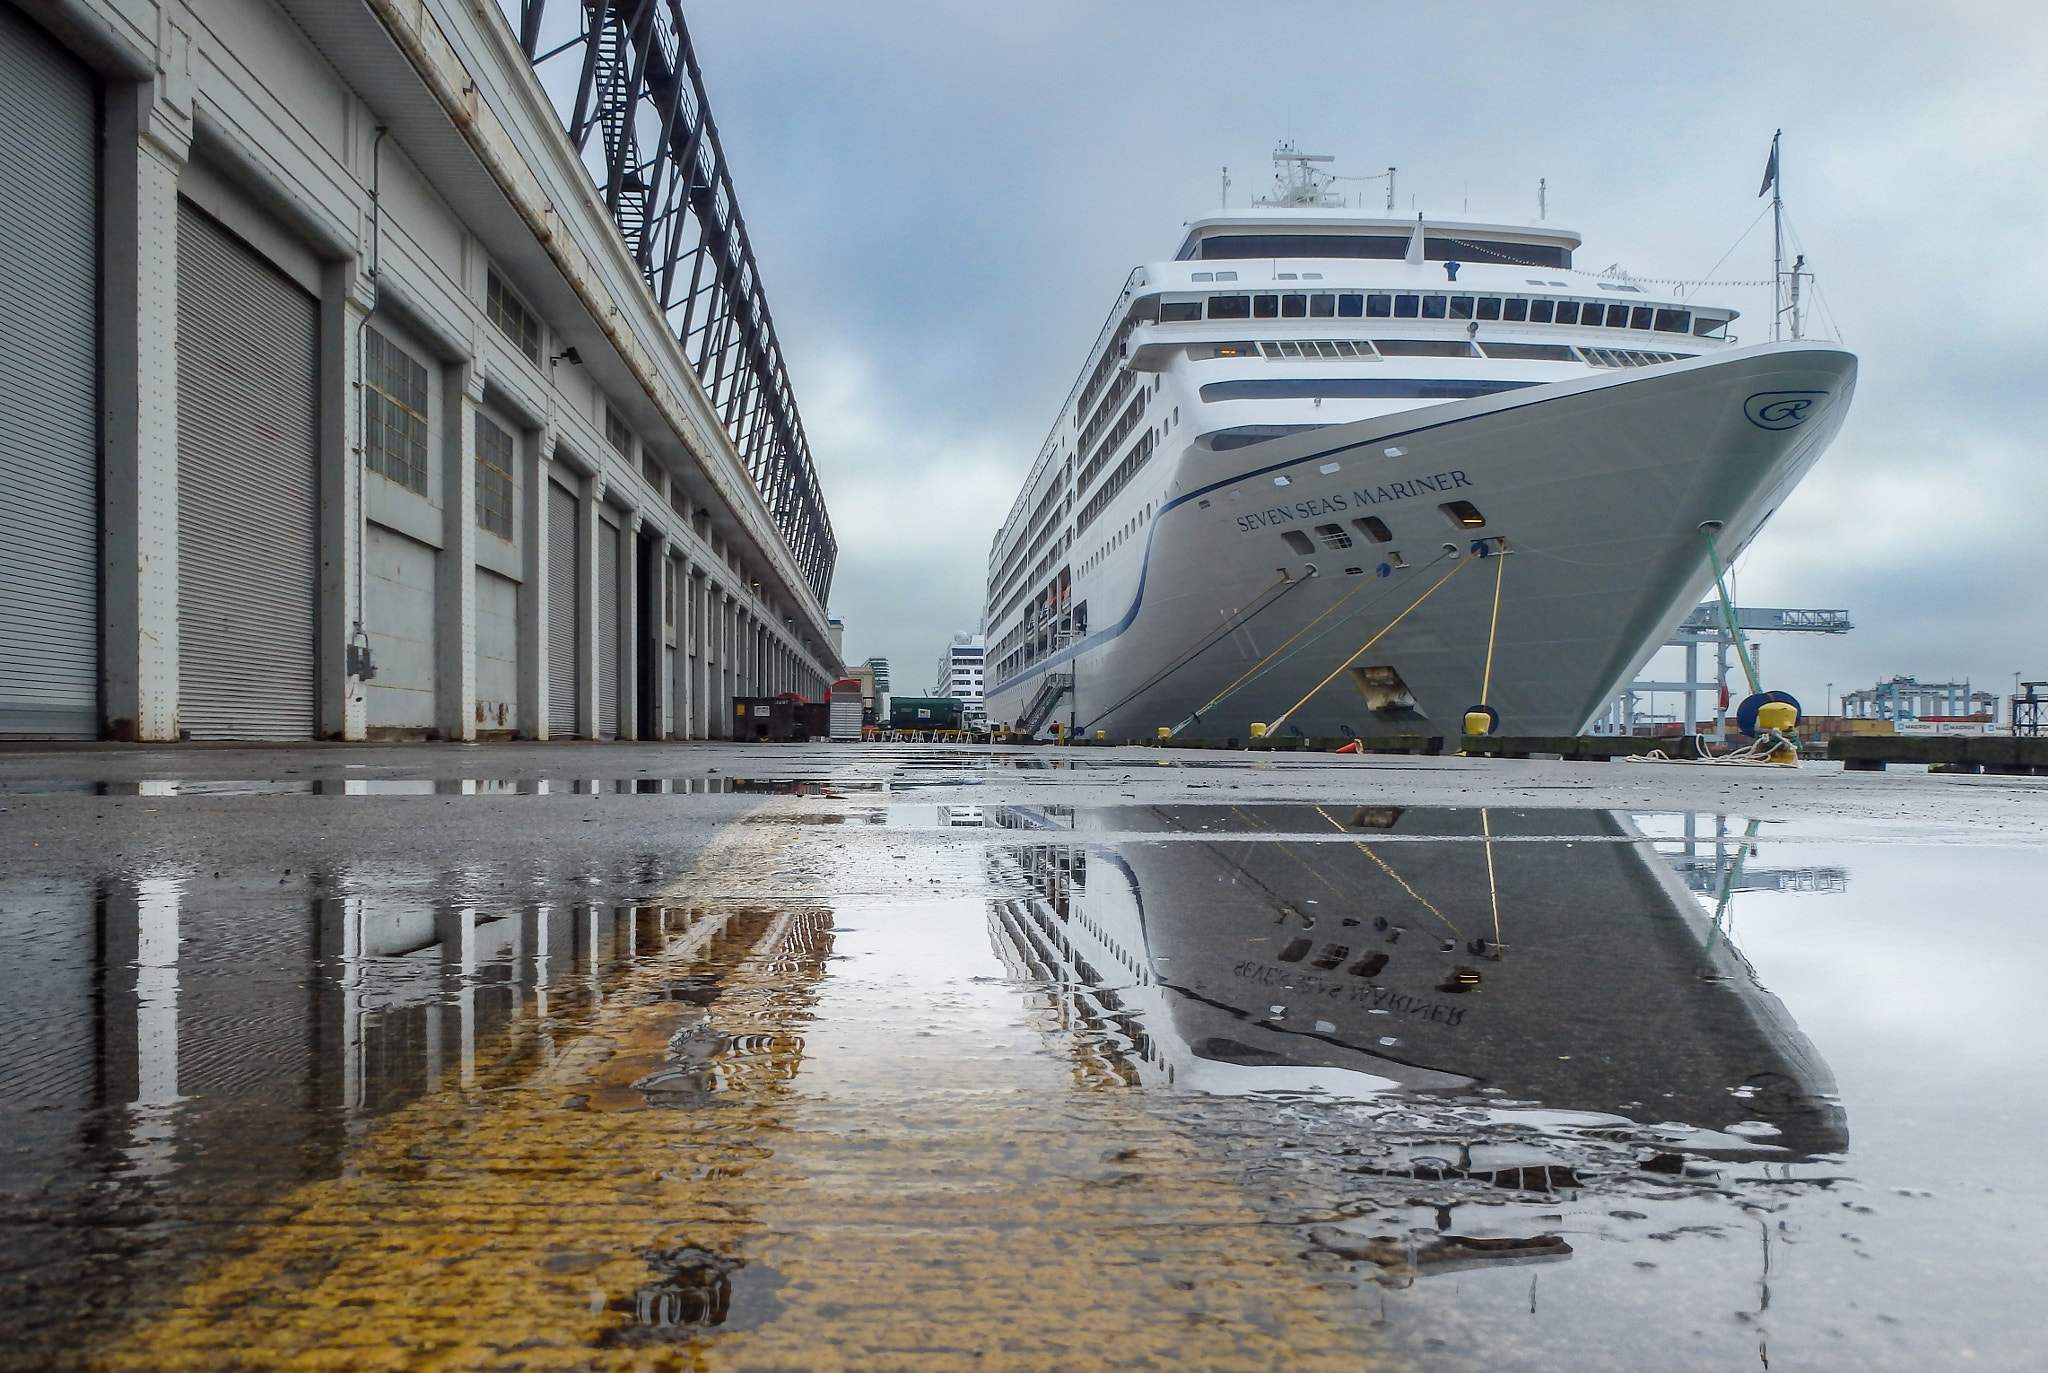 Olympus TG-830 sample photo. Cruise ship reflection - boston photography